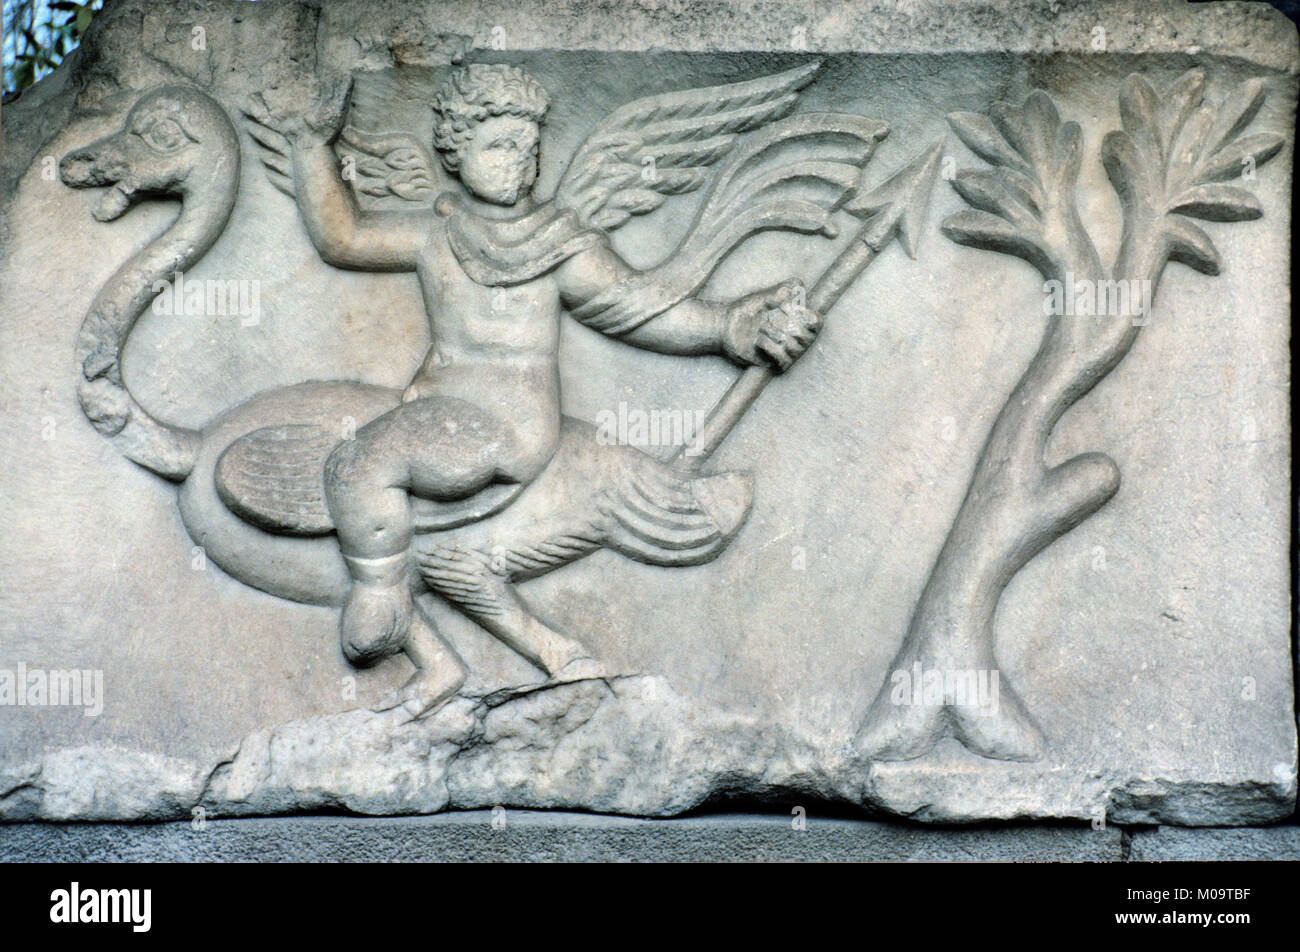 Marmor Carven auf griechisch-römischen Grab oder Sarkophag zeigt eine geflügelte Engel Reiten ein Strauß, entdeckt in der Region Izmir Türkei Stockfoto